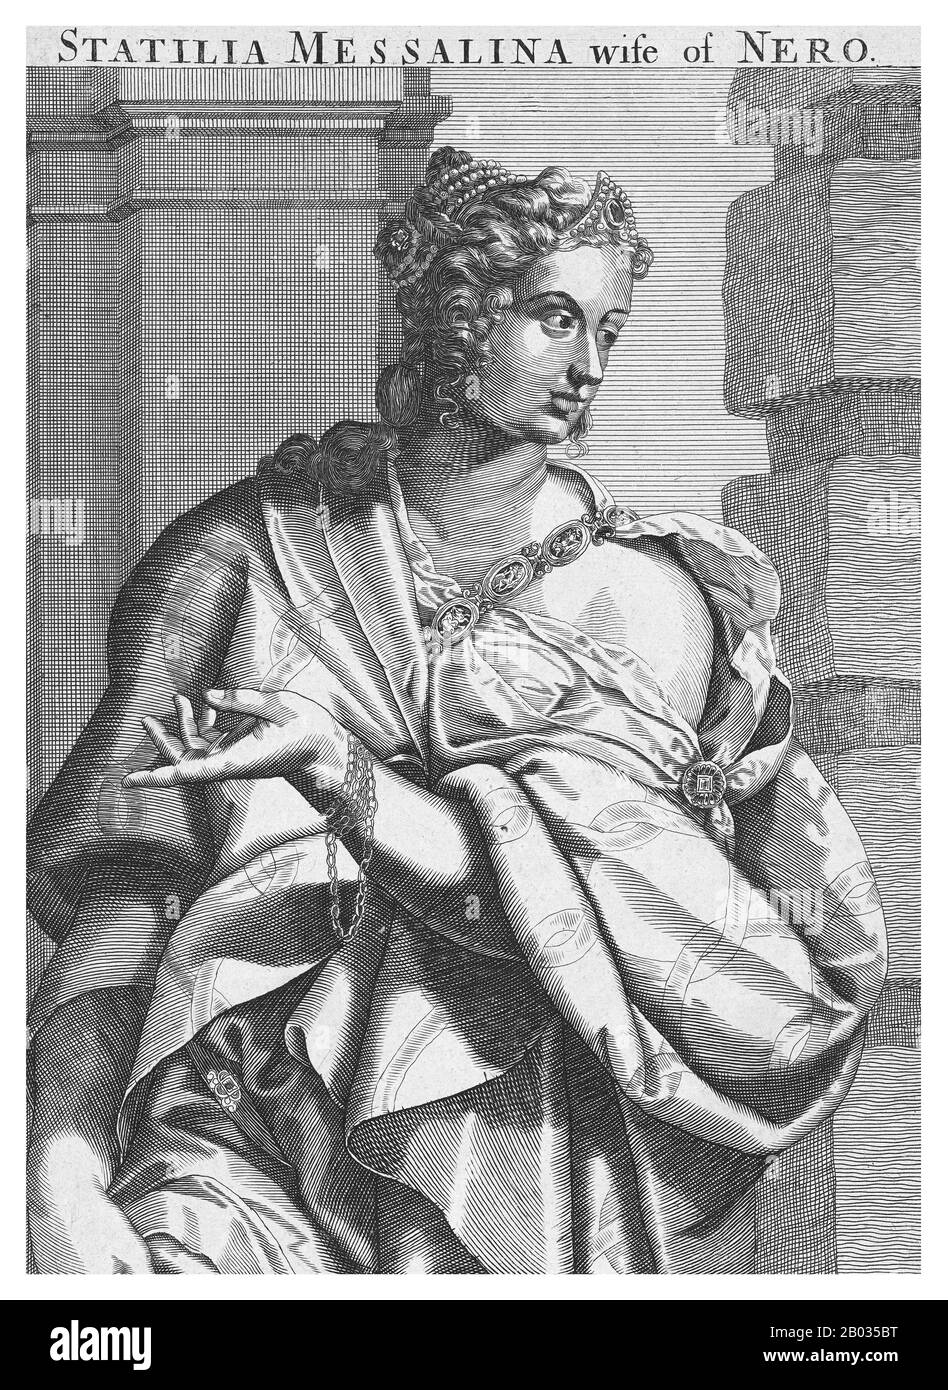 Statilia Messalina (35 anni dopo il 68 d.C.) era una donna patrizia romana, imperatrice e terza moglie di Nerone. Si sposò con il console Marrcus Julius Vestinus Atticus e divenne padrona di Nerone nel 65 d.C. Dopo la morte della seconda moglie di Nerone, Poppaea Sabina, forse nelle sue mani, Vestinus fu costretto dall'imperatore a suicidarsi per sposare Statilia. Fu una delle poche cortigiani a sopravvivere al crollo del regno di Nerone, morendo qualche tempo dopo il 68 d.C. Foto Stock